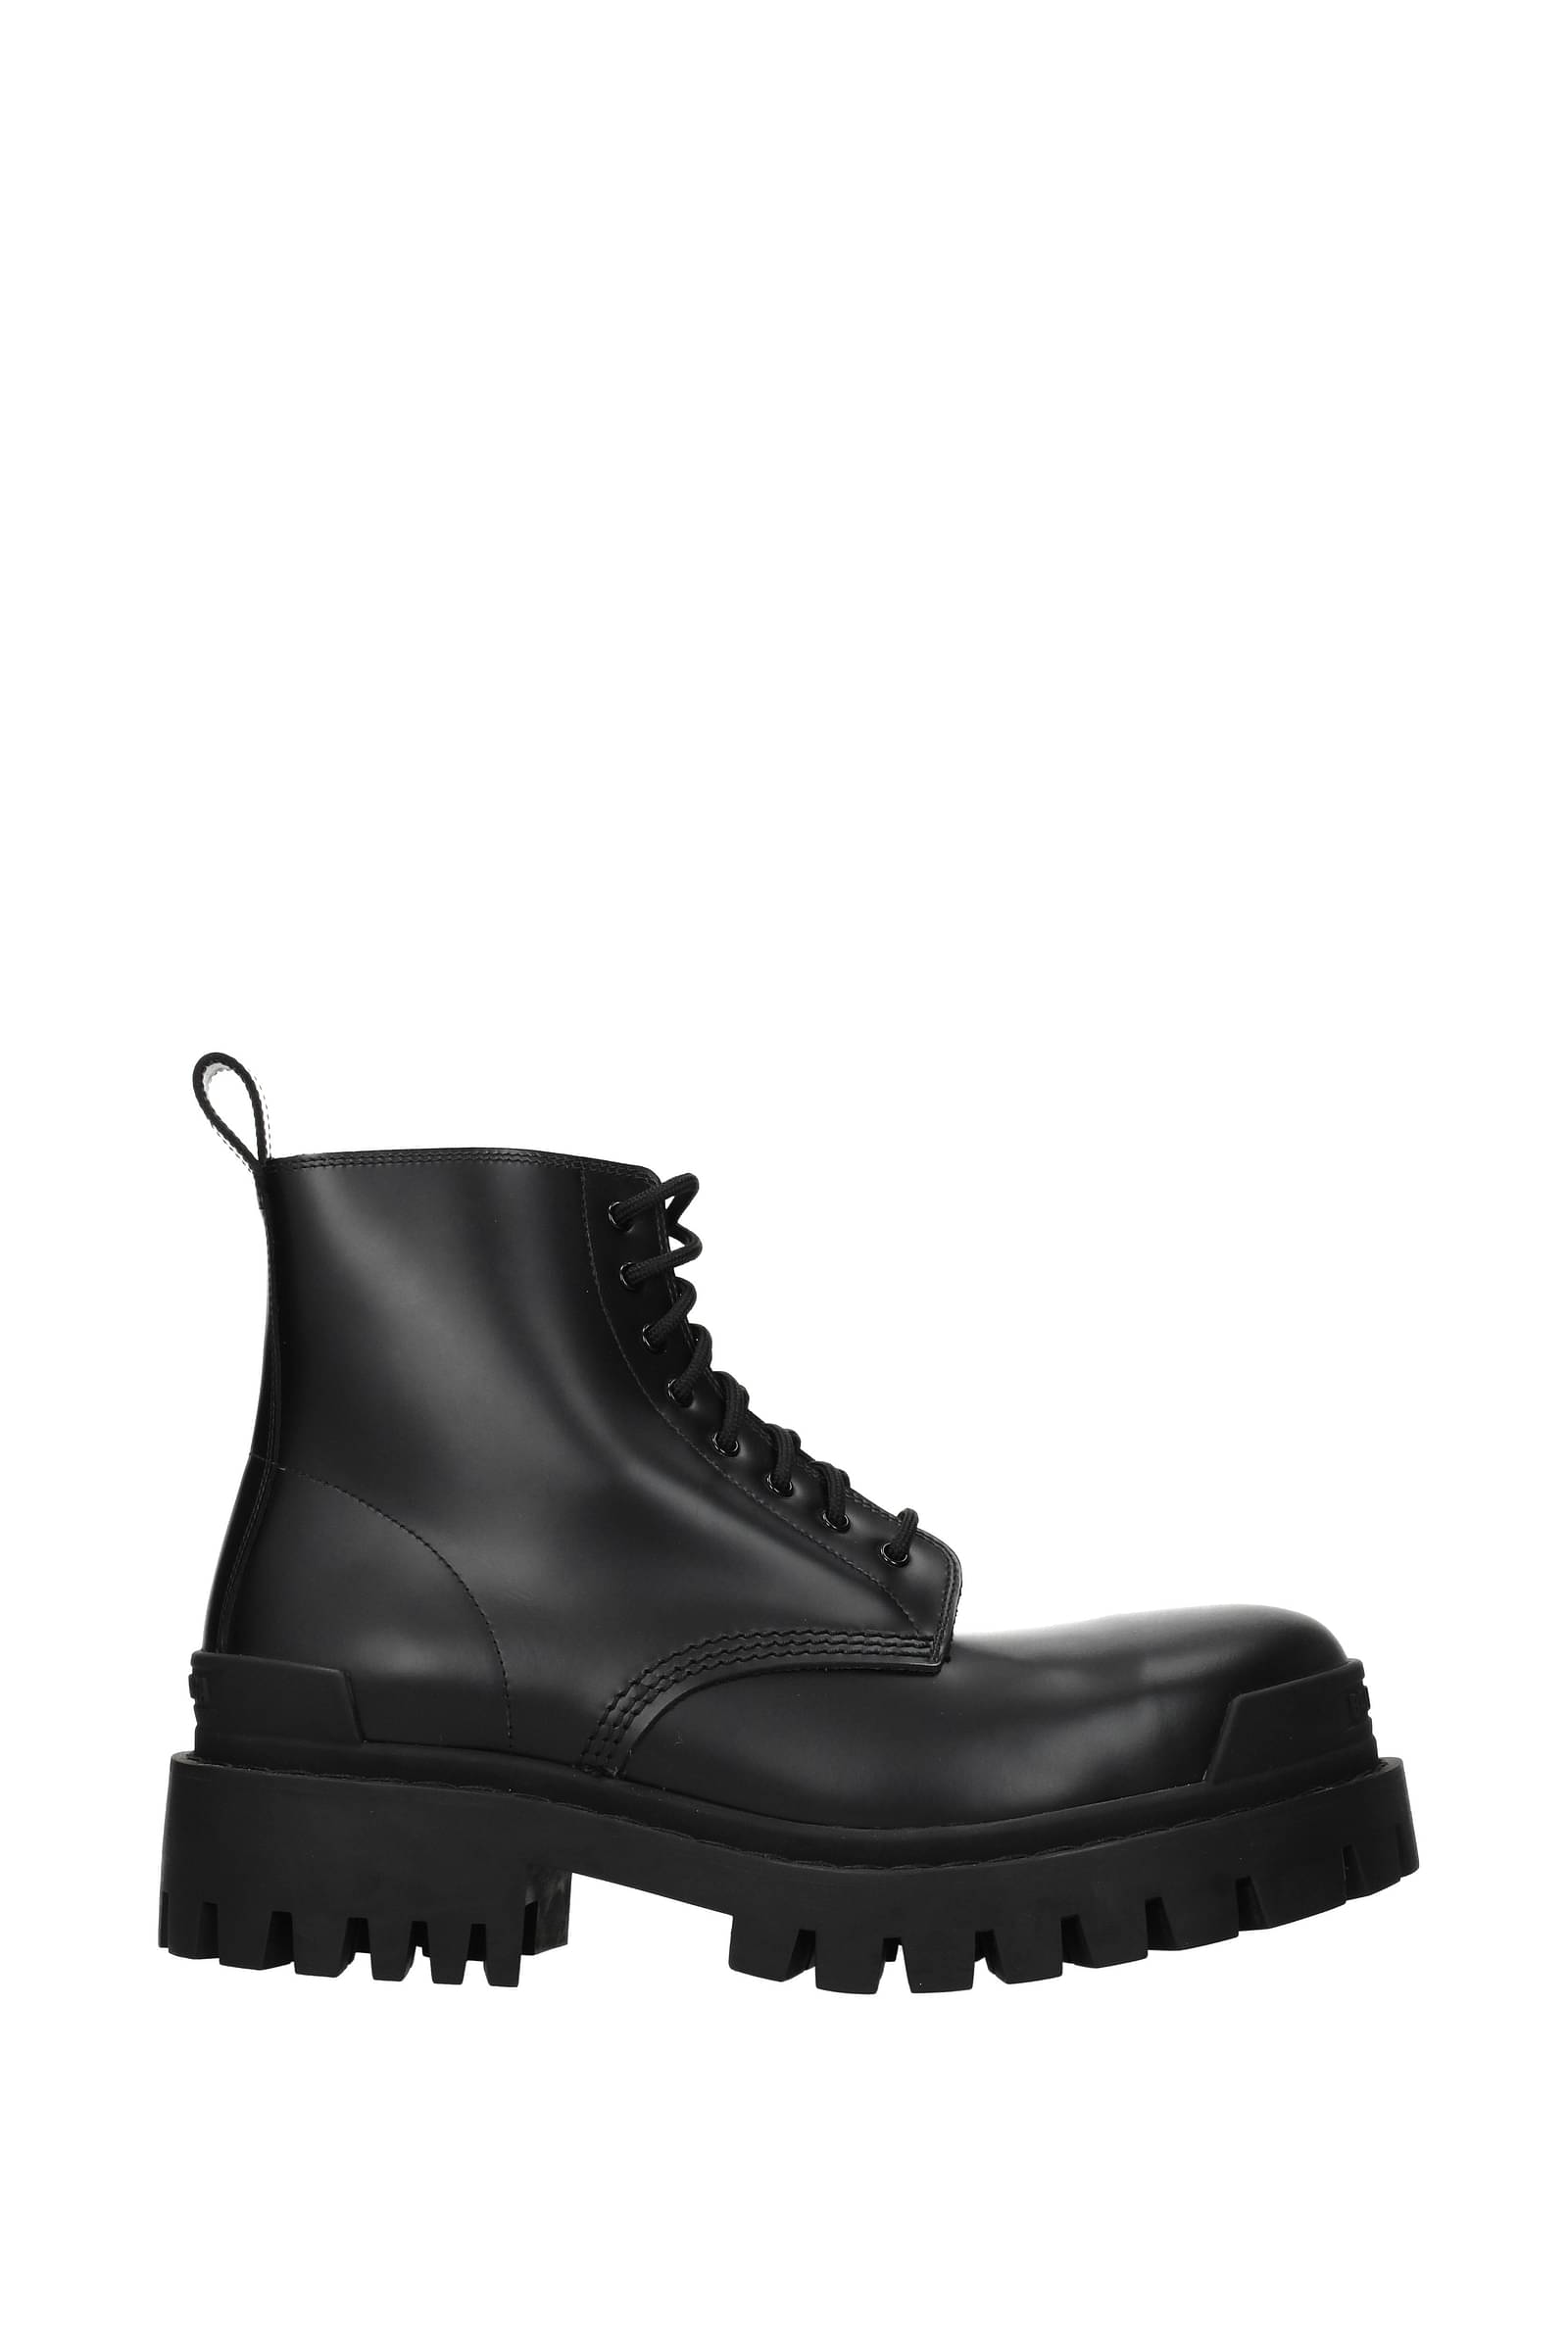 Balenciaga  Strike Leather Boots  Black Balenciaga